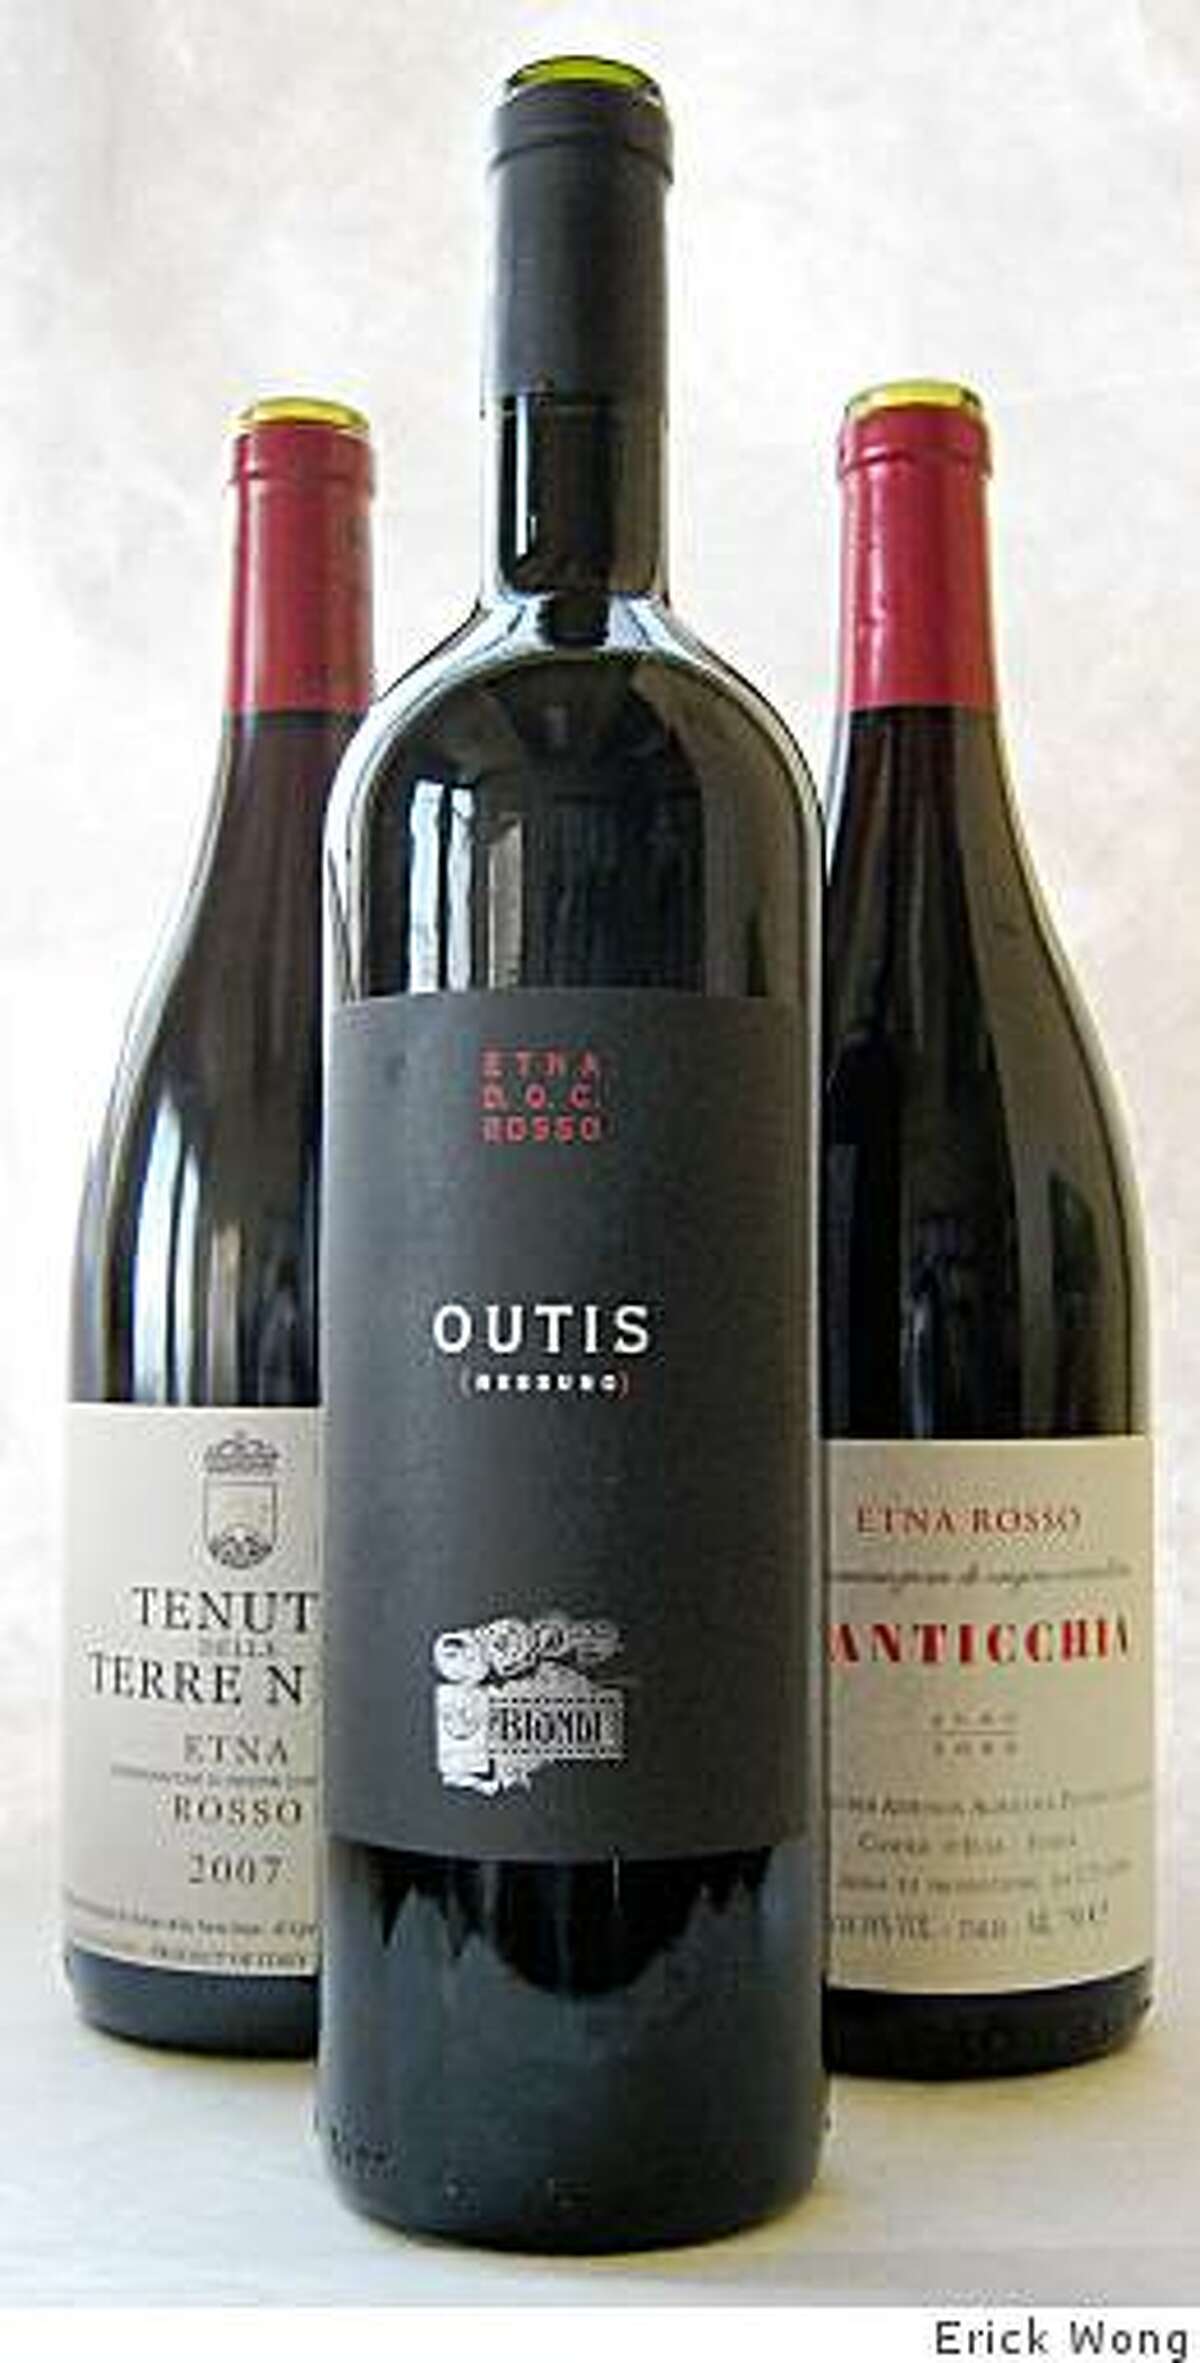 From left, 2007 Tenuta delle Terre Nere Etna Rosso, 2005 Vini Biondi Outis Etna Rosso, 2006 Pietro Caciorgna N'Anticchia Etna Rosso